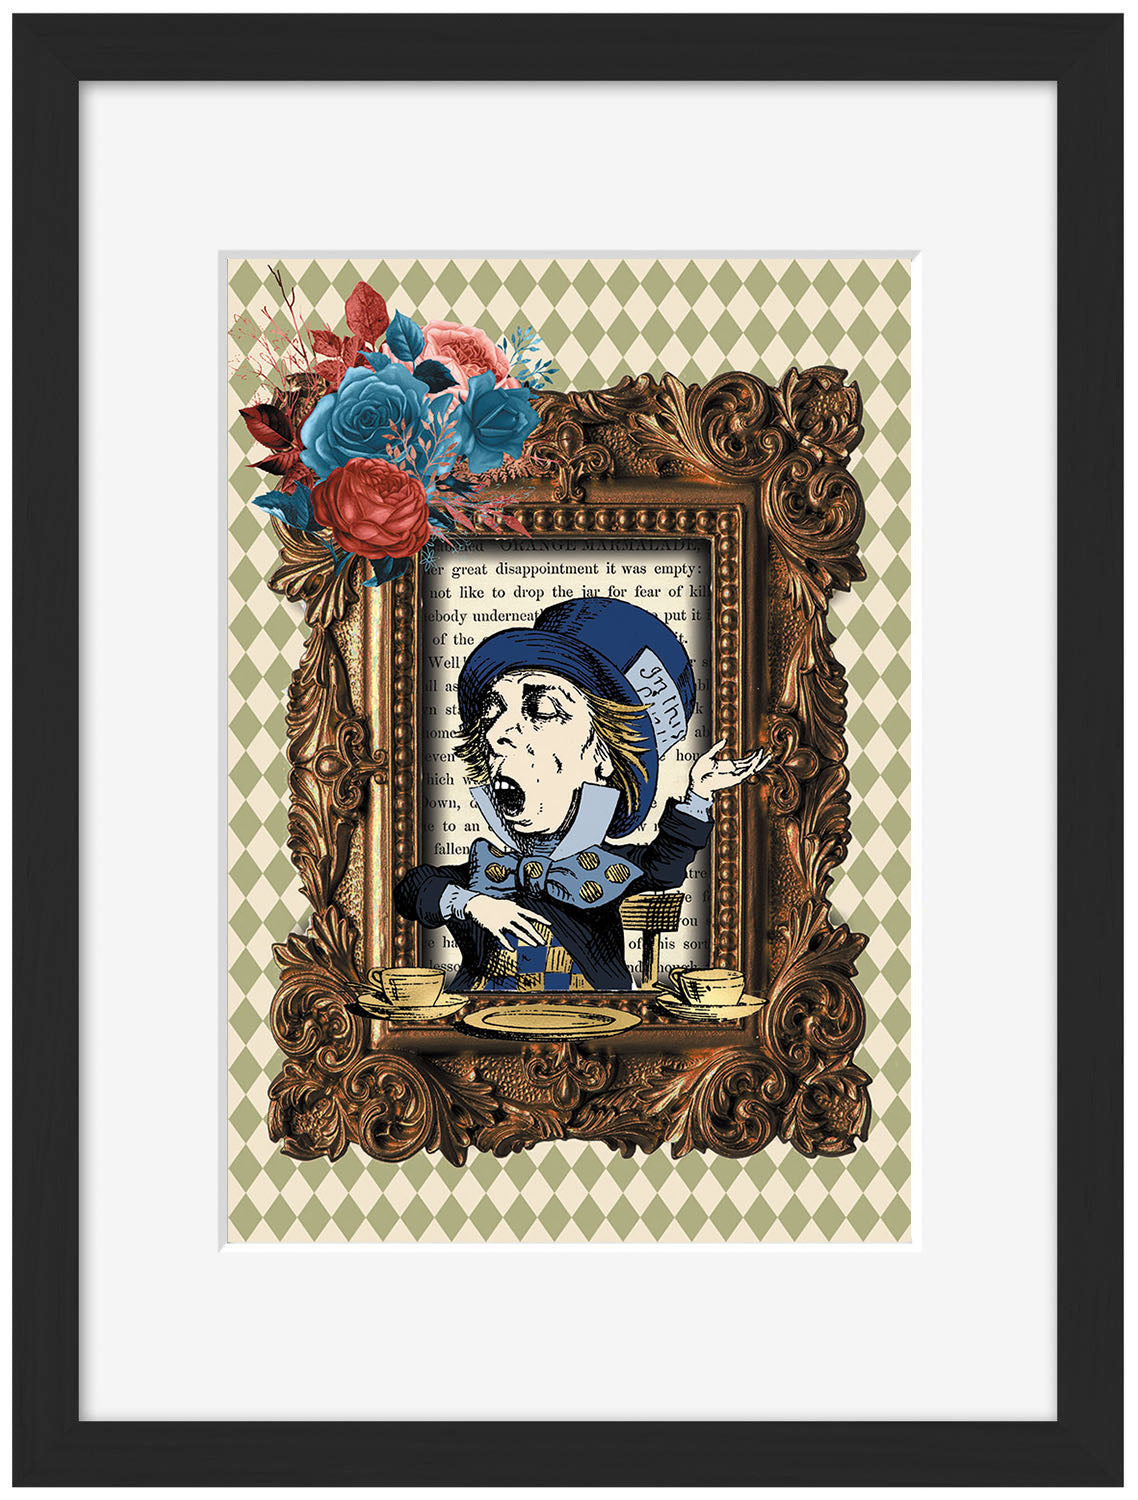 The Hatter Framed-alice, print-Framed Print-30 x 40 cm-BLUE SHAKER